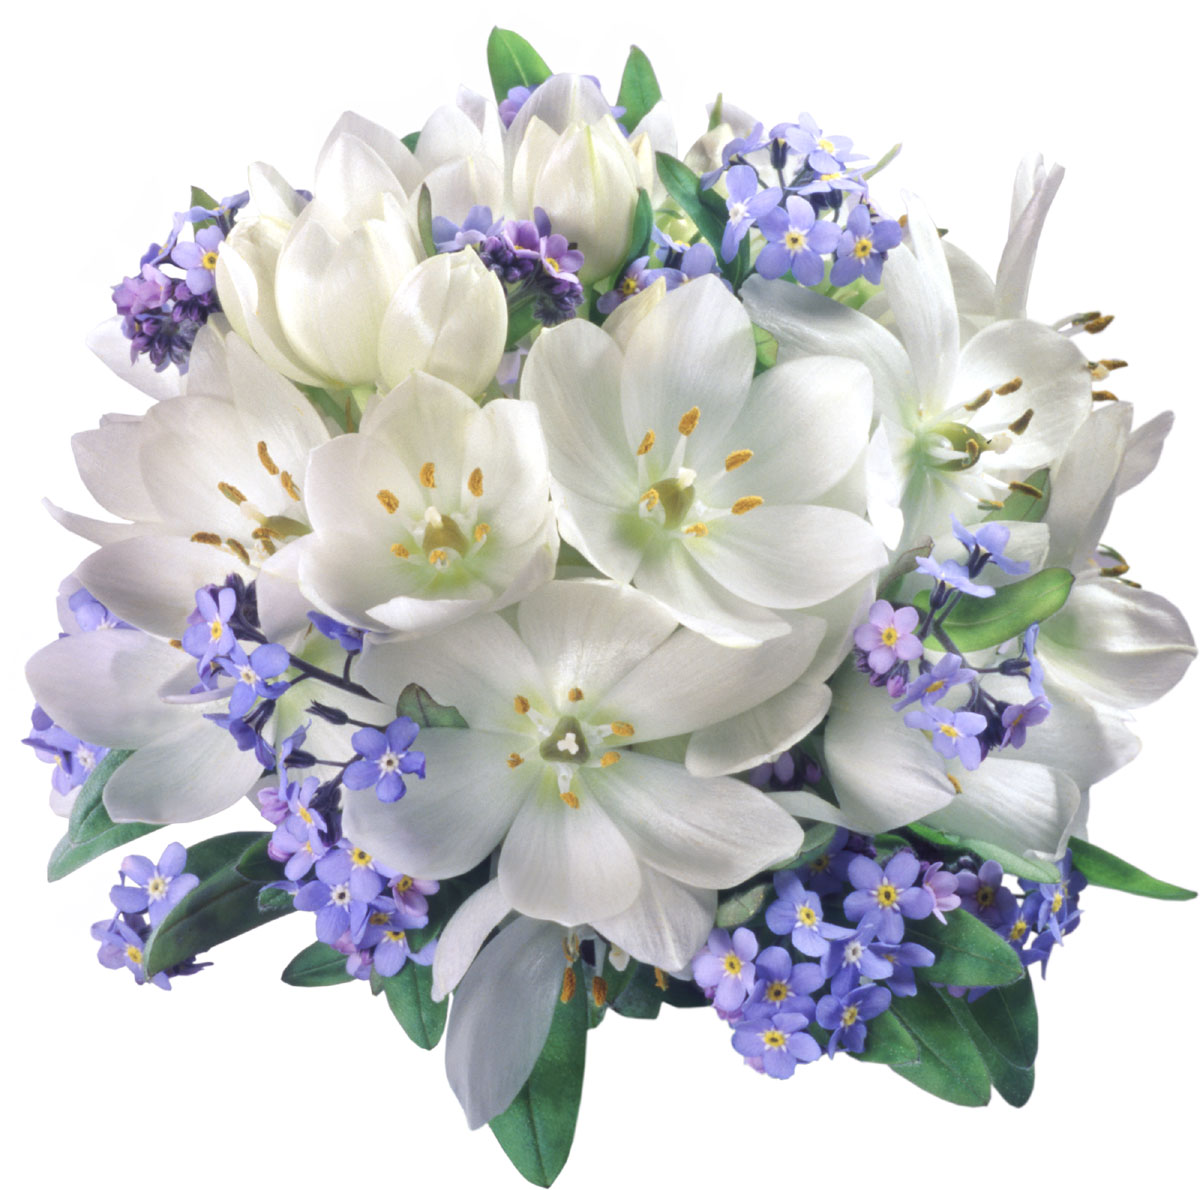 花や葉の写真 画像 フリー素材 花束no 928 白 青 花束